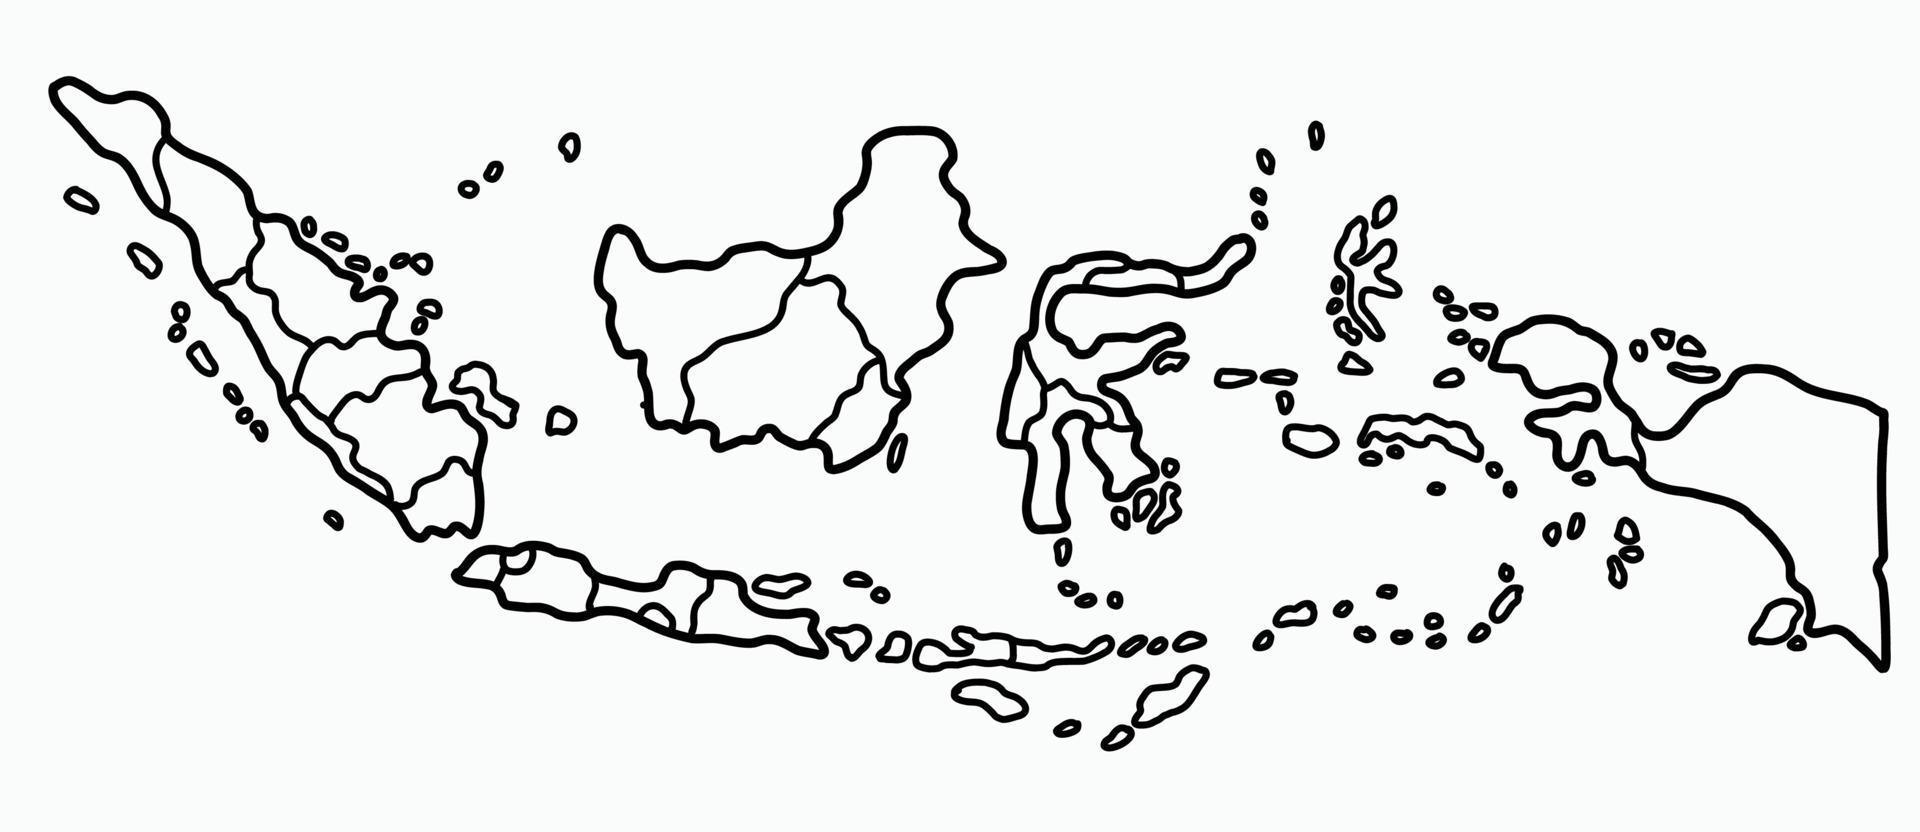 doodle dessin à main levée de la carte de l'indonésie. vecteur